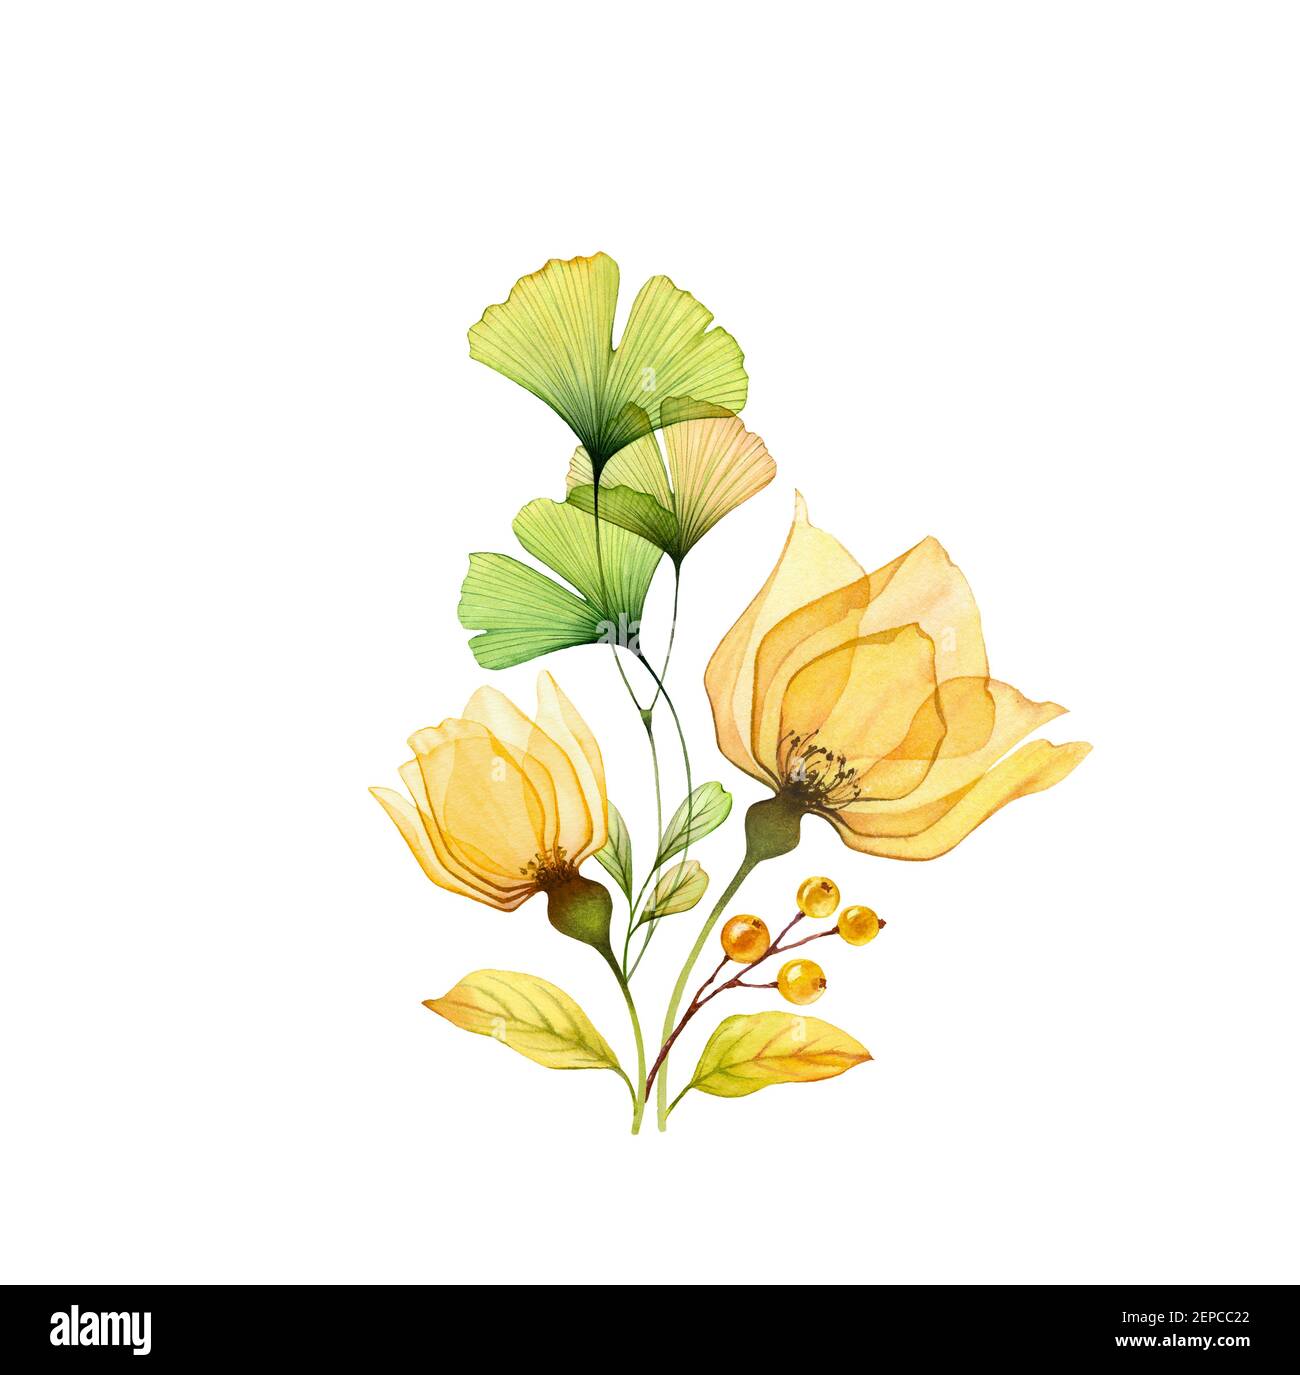 Aquarell-Bouquet. Transparente gelbe Rosen mit grünen Ginkgo-Blättern isoliert auf weiß. Handbemalte abstrakte Komposition. Botanische Abbildung für Stockfoto